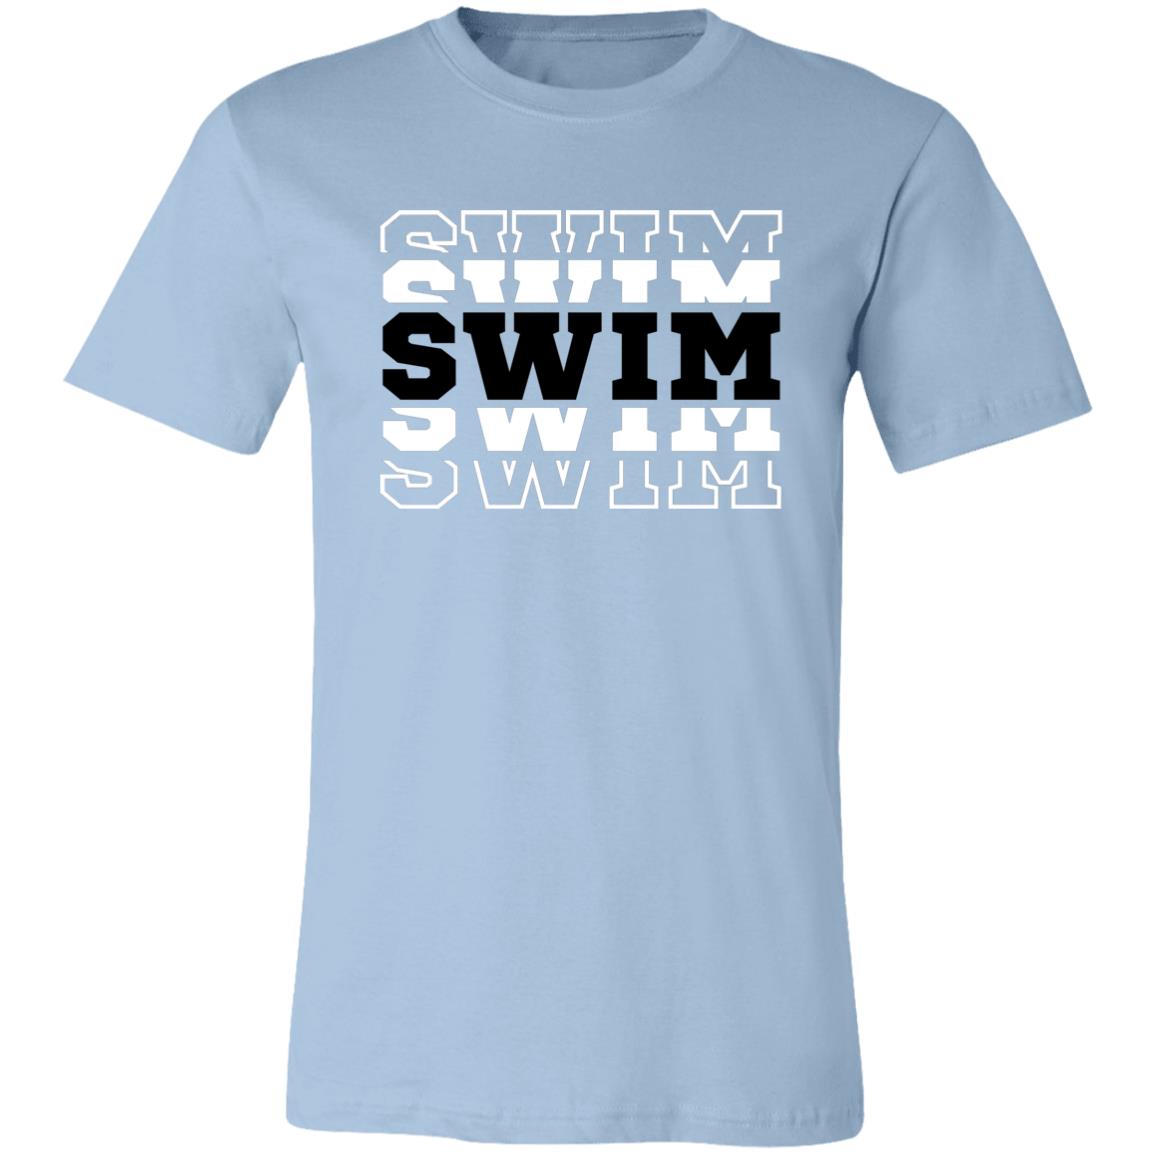 Swim Team Comfy T-Shirt